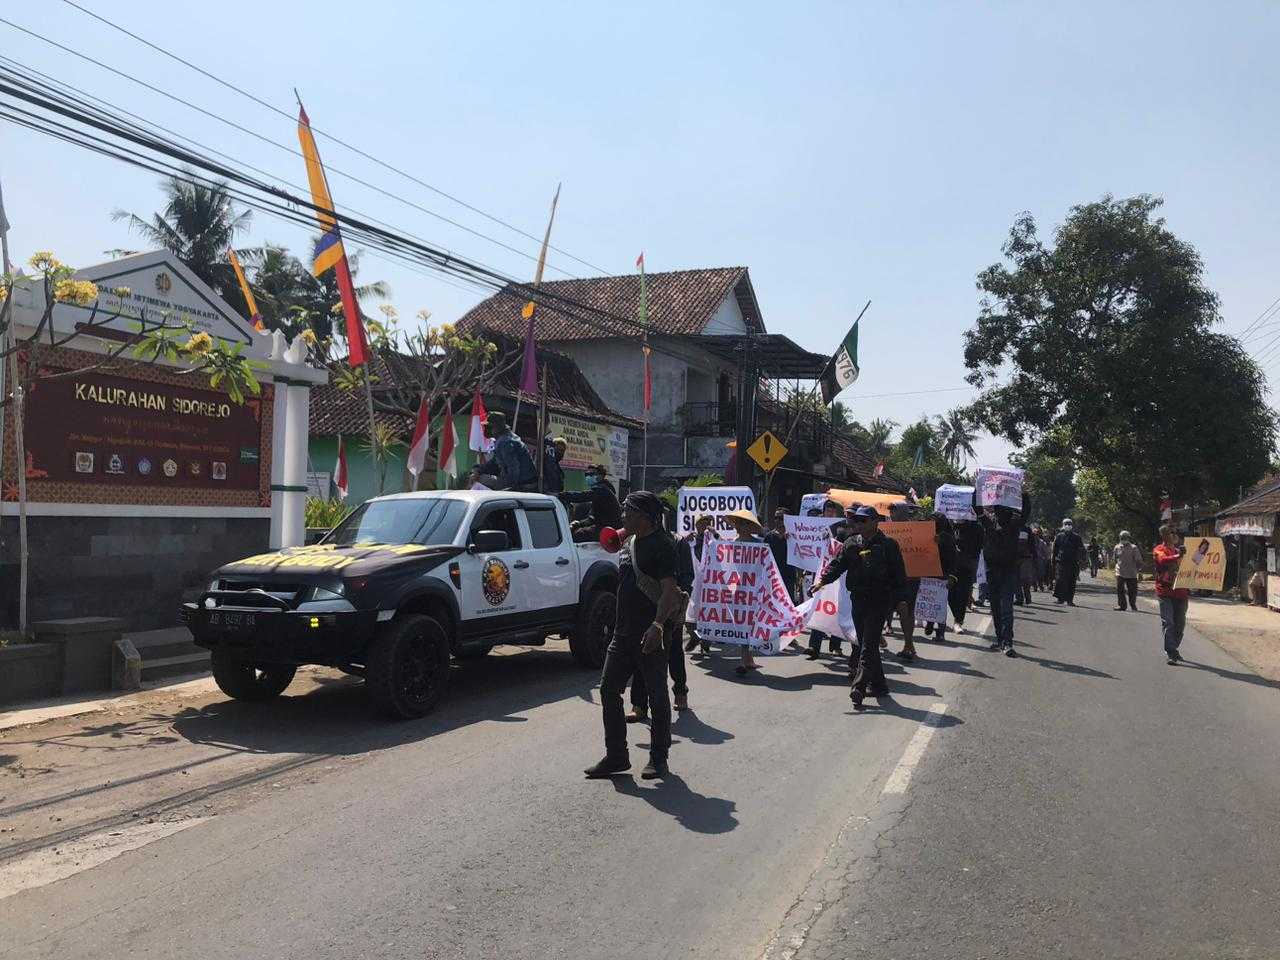 Warga Sidorejo, Godean, Kembali Gelar Demonstrasi Tuntut Jogoboyo Segera Mundur: Ini Adalah Momen Penting Bersihkan Sidorejo